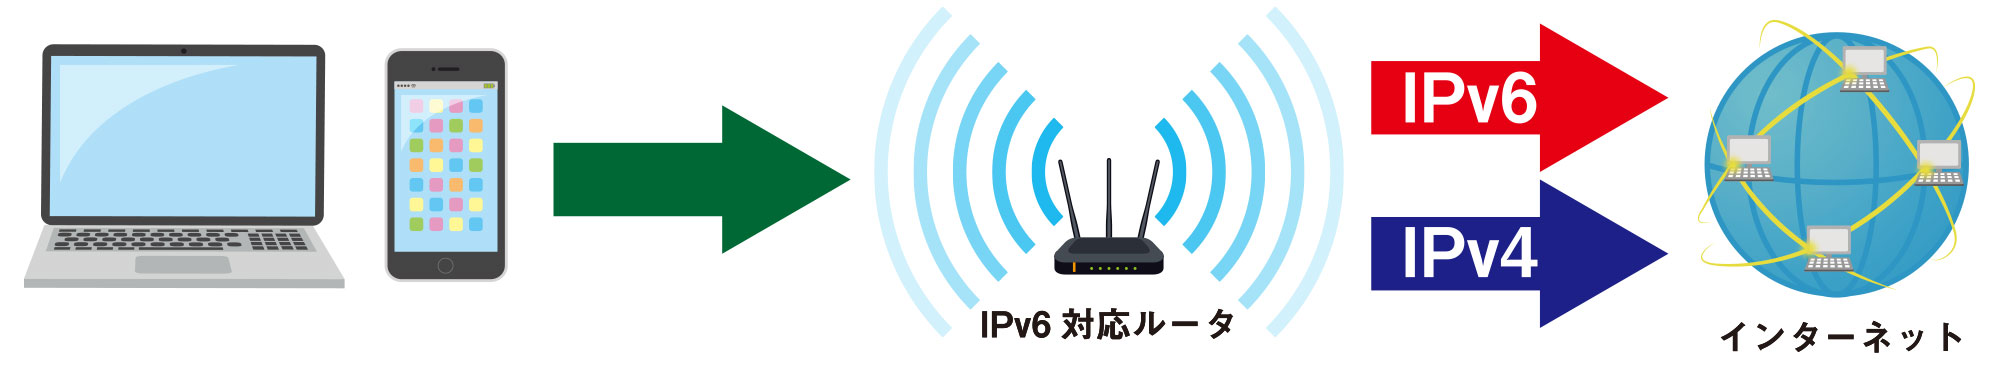 エコーシティー・駒ヶ岳ではIPv4とIPv6を同一ネットワーク上で提供しています